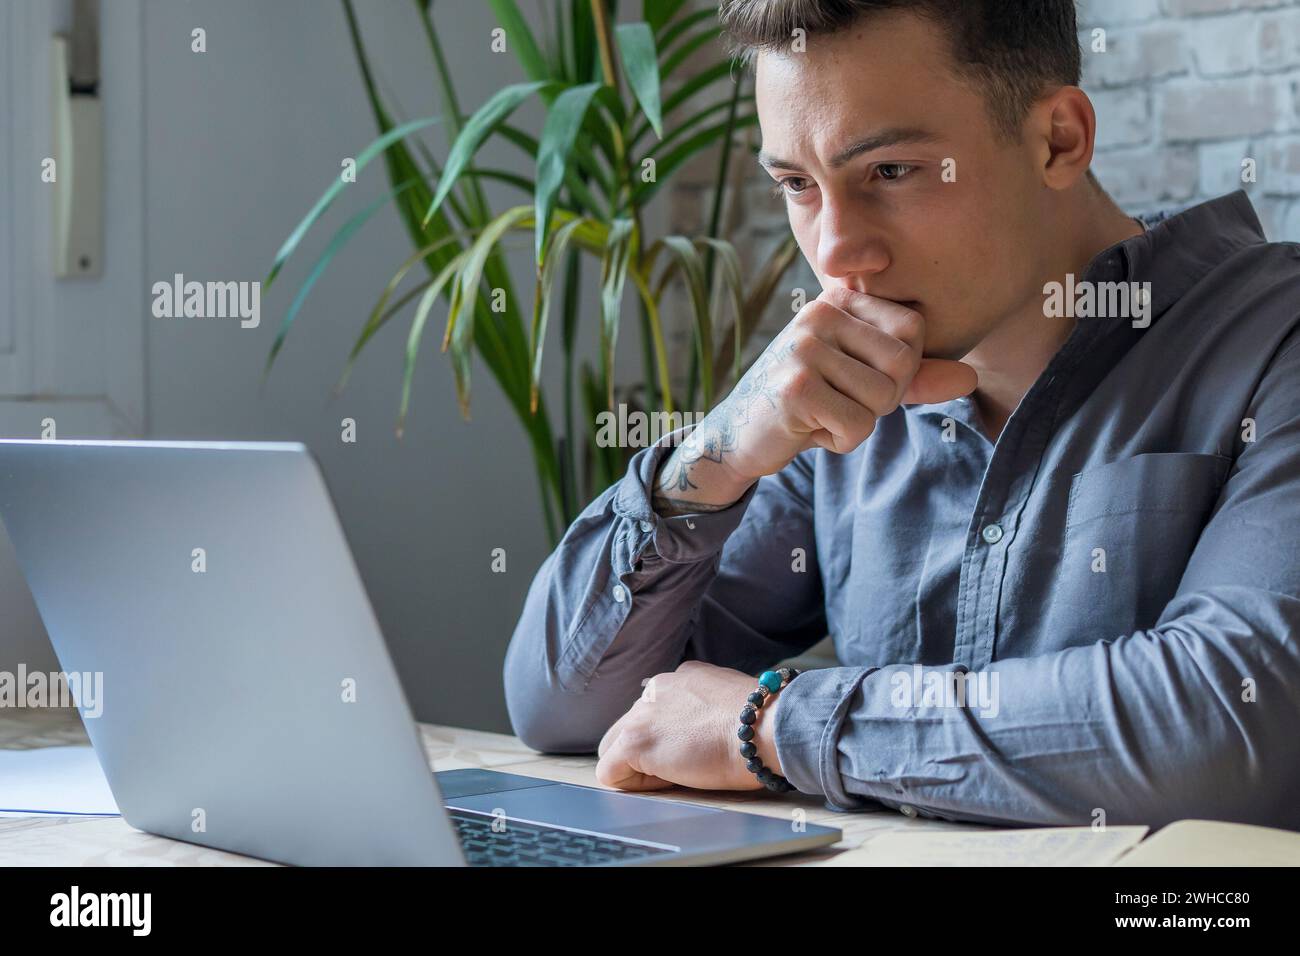 Homme d'affaires réfléchi touchant le menton, réfléchissant aux idées ou à la stratégie, assis au bureau de travail en bois avec ordinateur portable, freelance travaillant sur un projet en ligne, étudiant se préparant à l'examen à la maison Banque D'Images